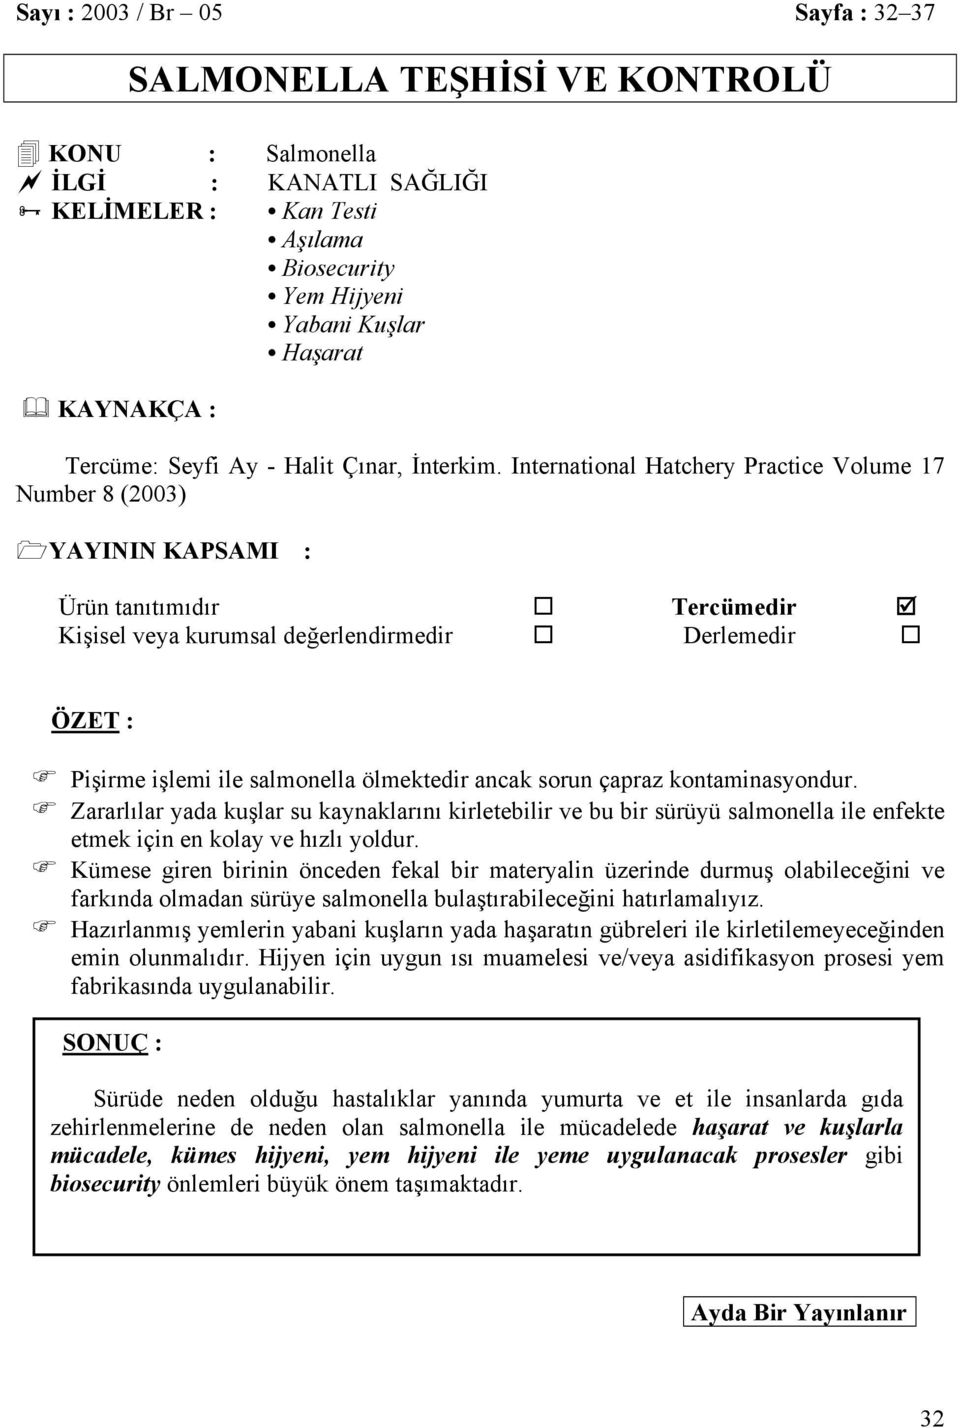 International Hatchery Practice Volume 17 Number 8 (2003) YAYININ KAPSAMI : Ürün tanıtımıdır Tercümedir Kişisel veya kurumsal değerlendirmedir Derlemedir ÖZET : Pişirme işlemi ile salmonella